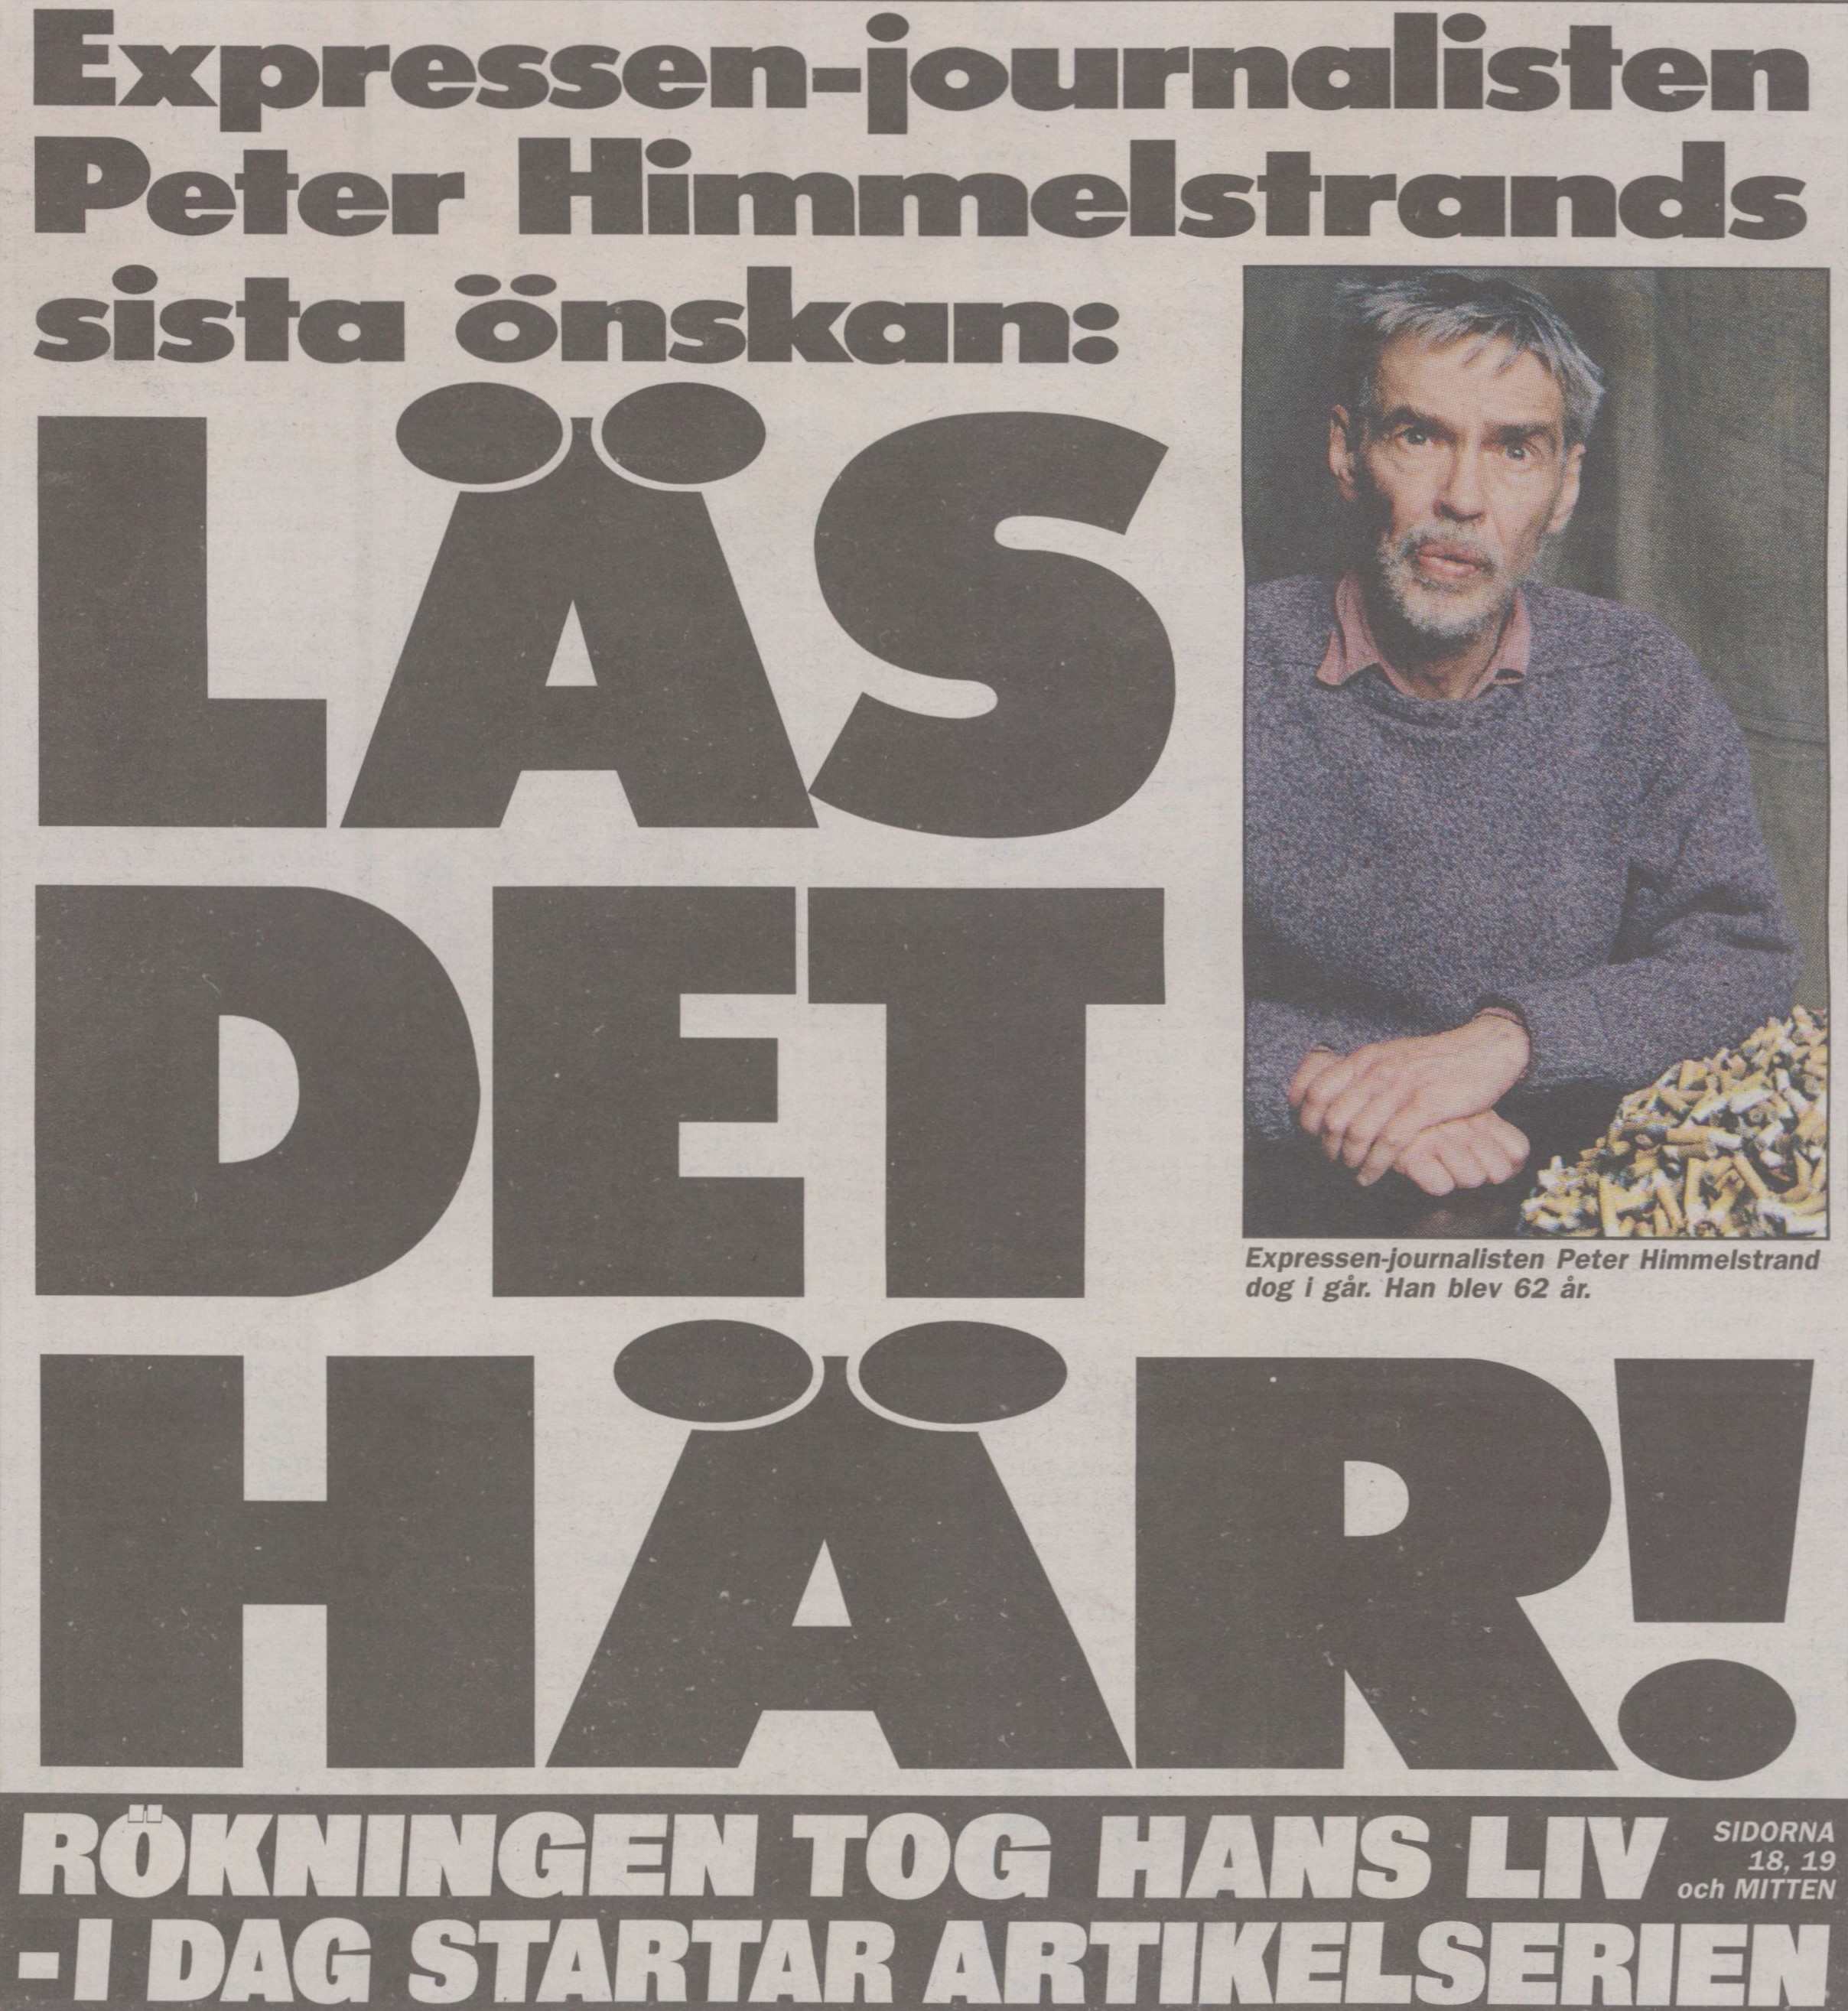 Tidningssida med bild på skäggig äldre gråhårig man vid ett berg av fimpar. Text: Expressen-journalisten Peter Himmelstrands sista önskan.